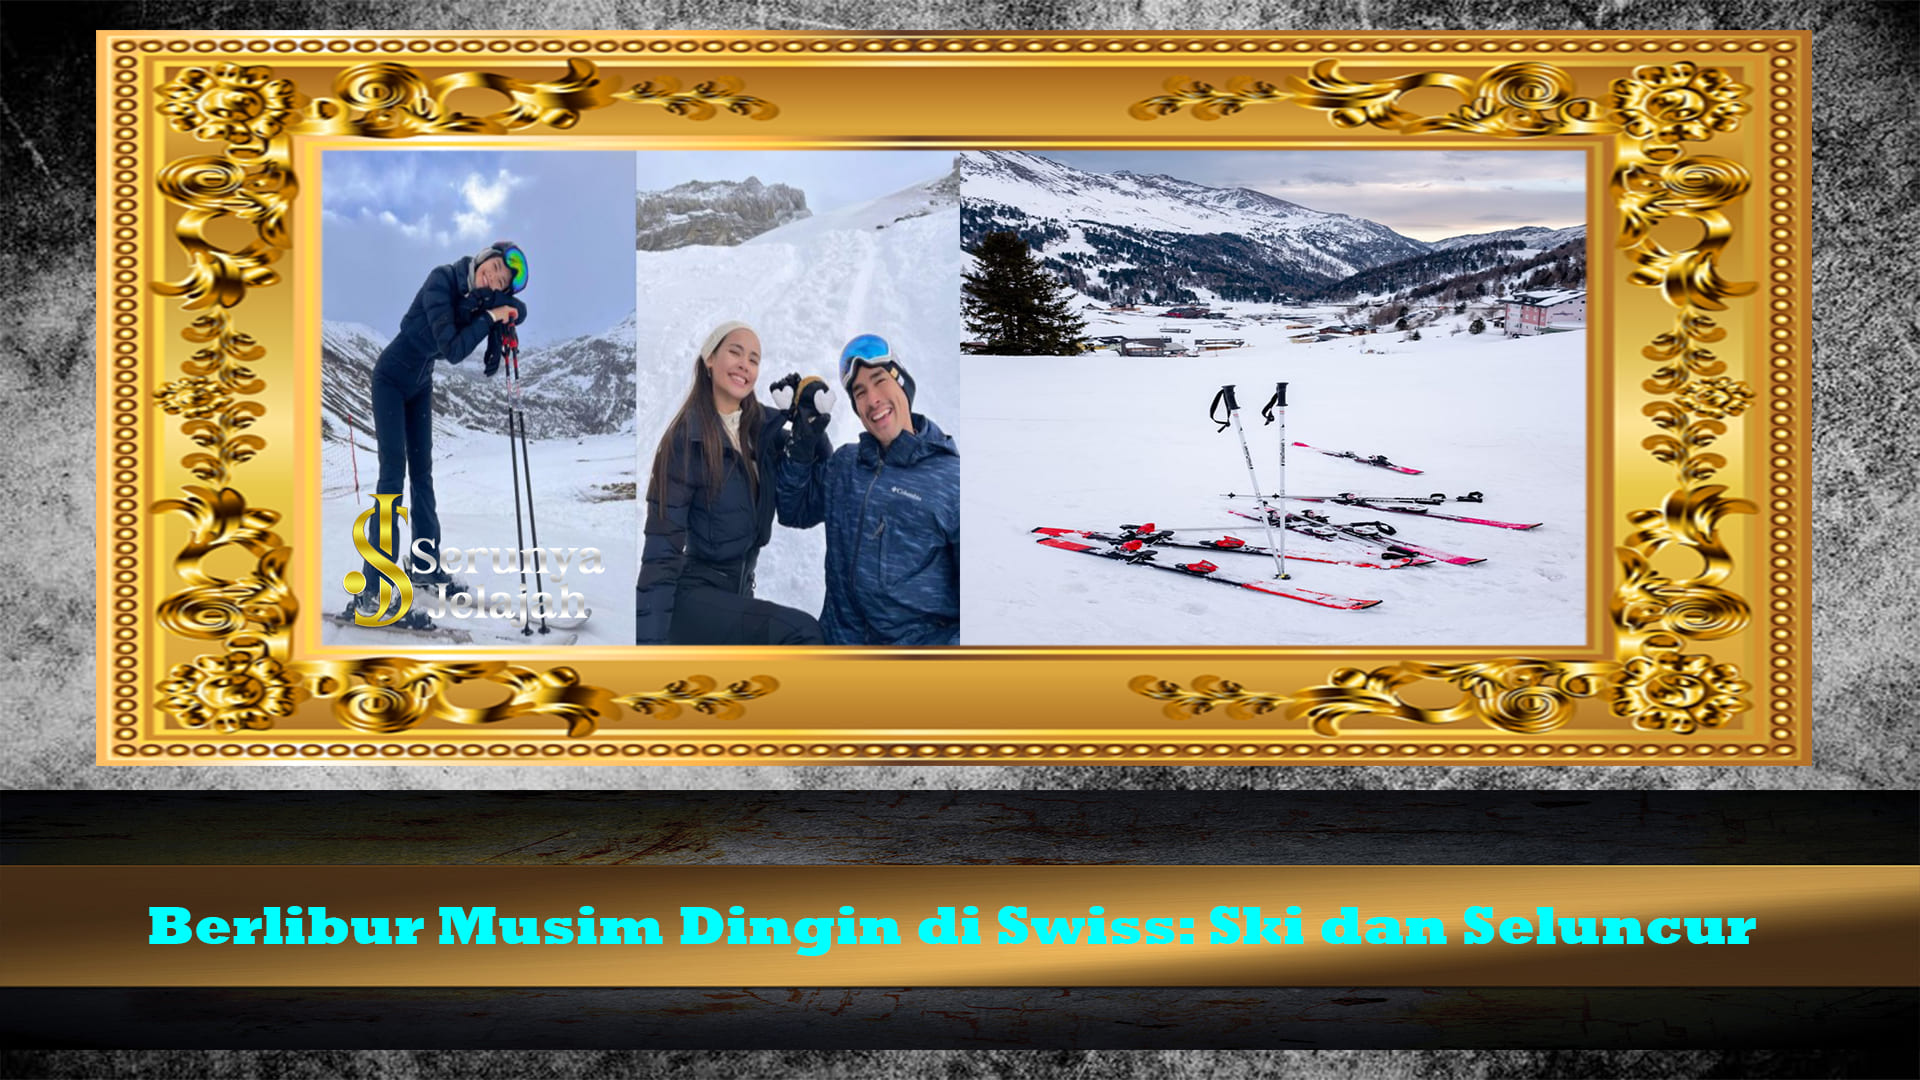 Berlibur Musim Dingin di Swiss: Ski dan Seluncur